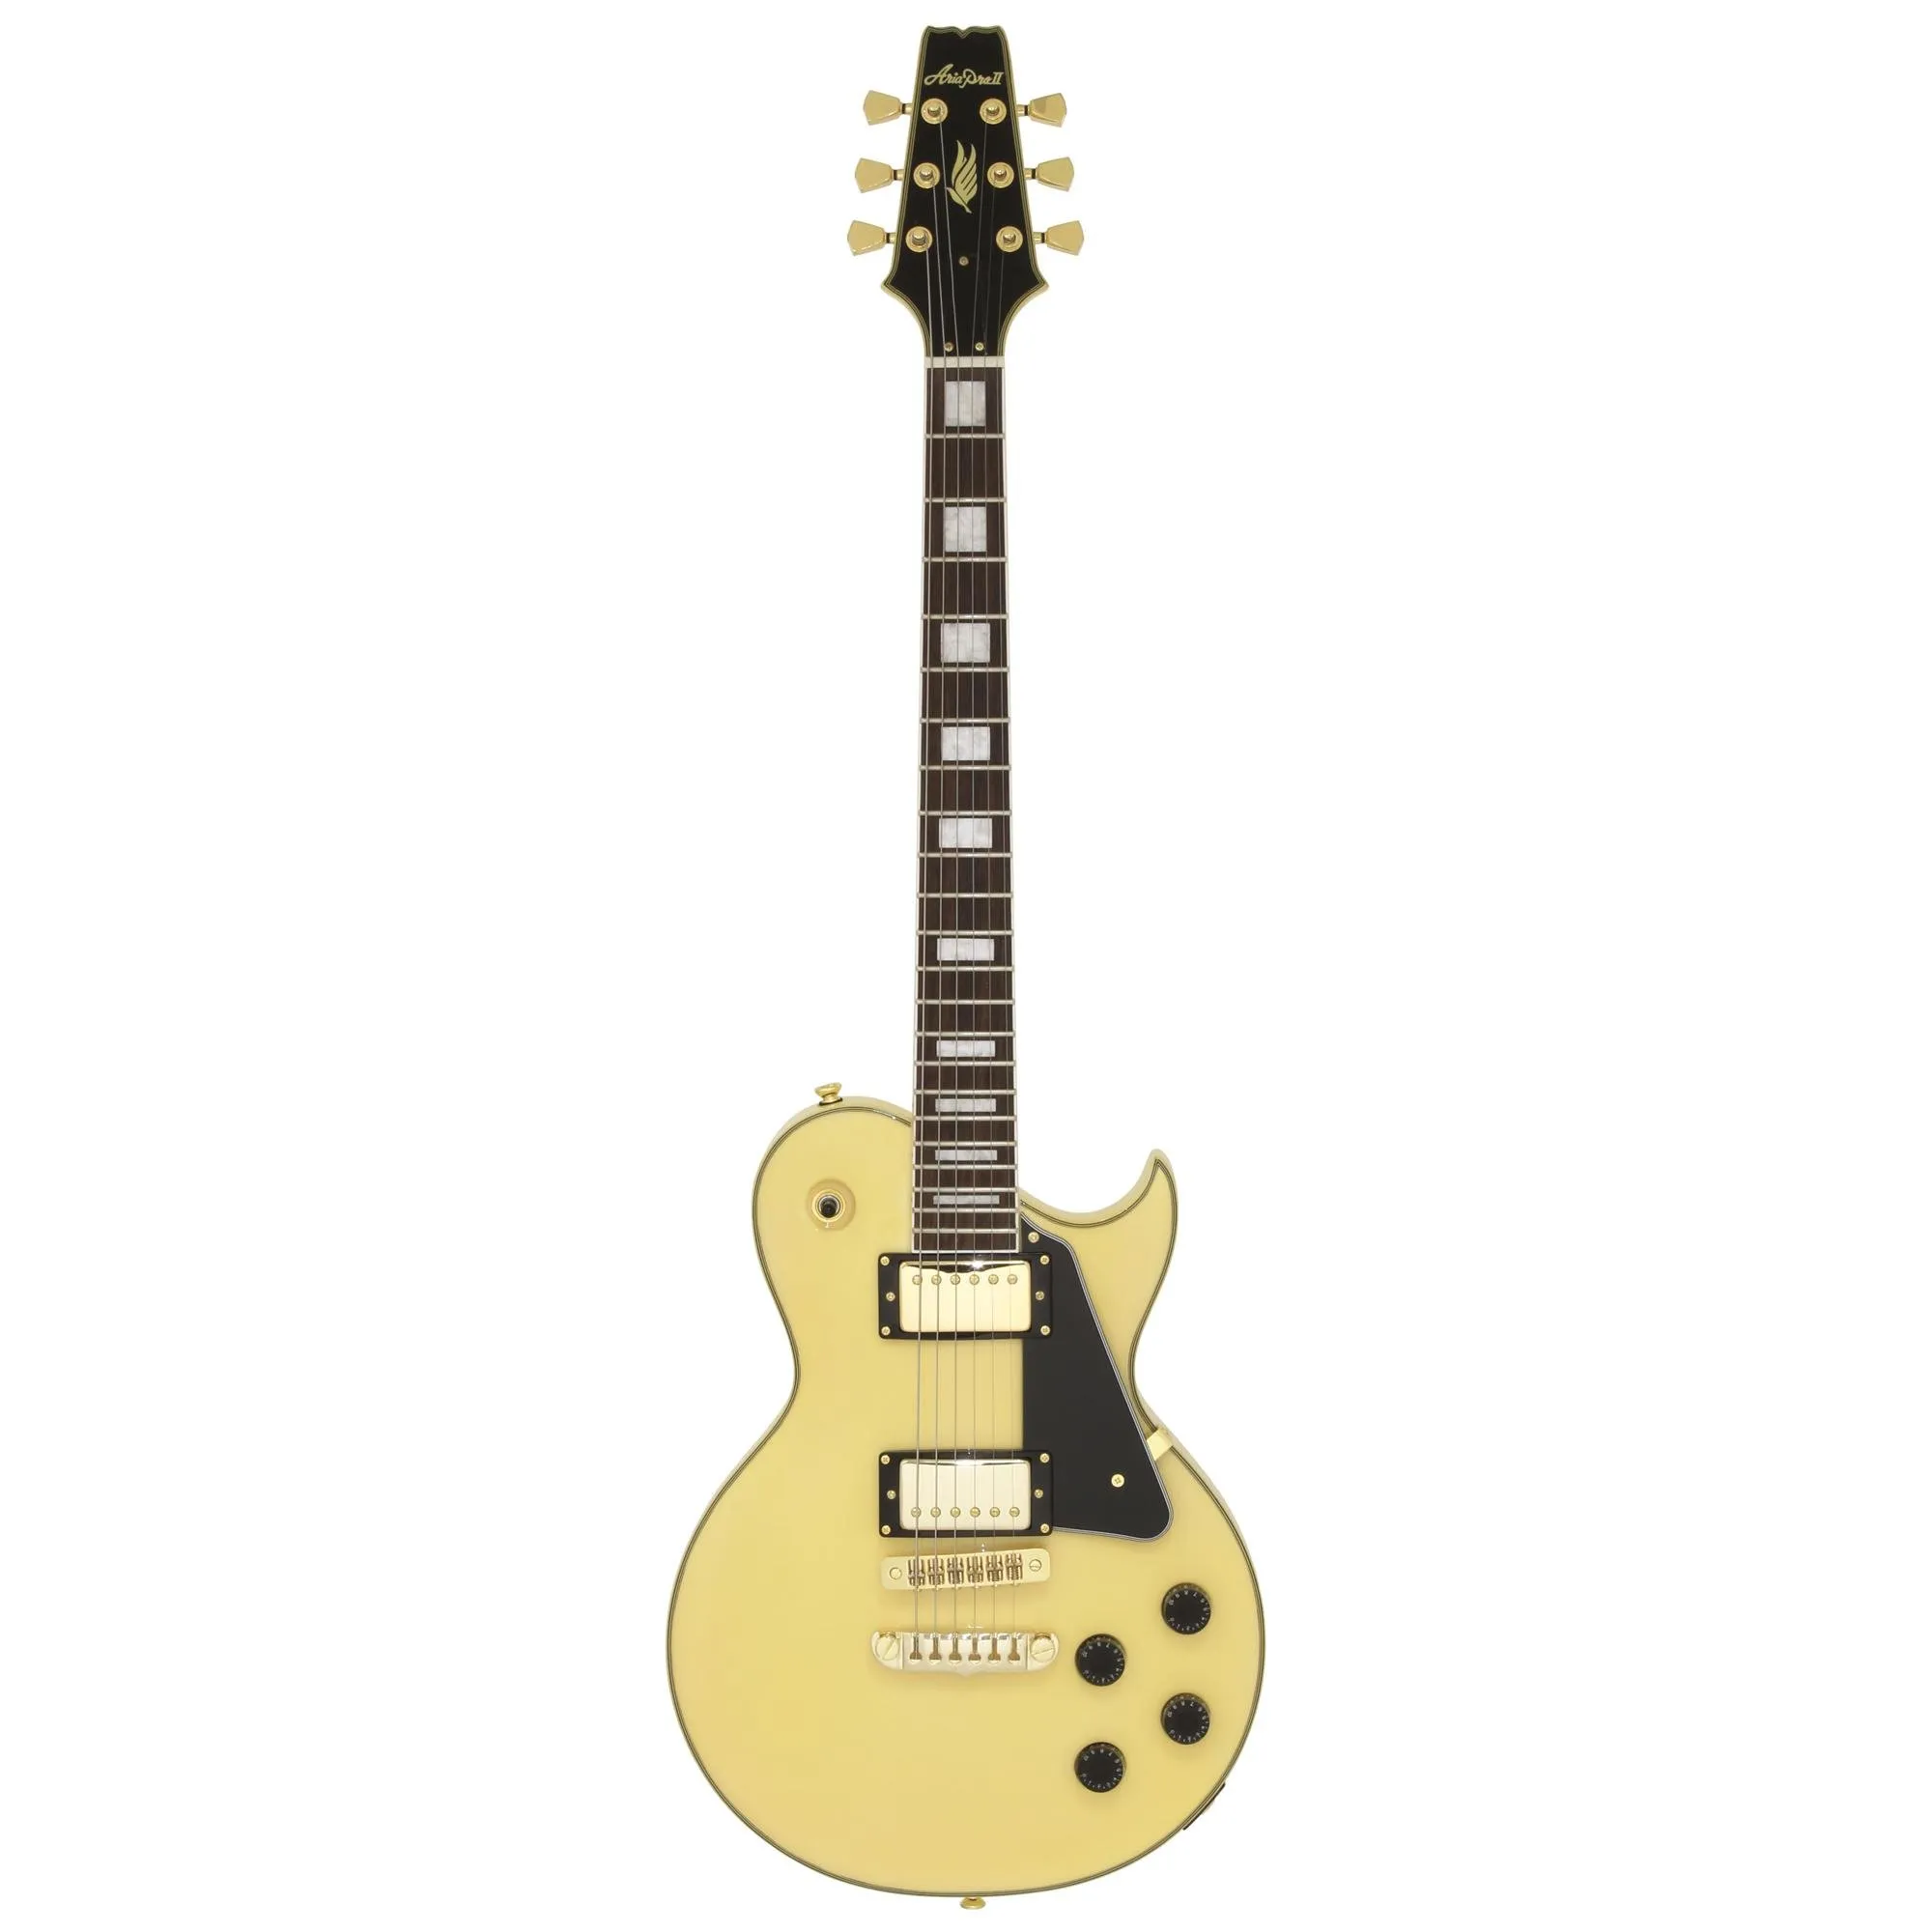 Guitarra Aria Pro II PE-350CST Aged White por 2.904,00 à vista no boleto/pix ou parcele em até 12x sem juros. Compre na loja Mundomax!